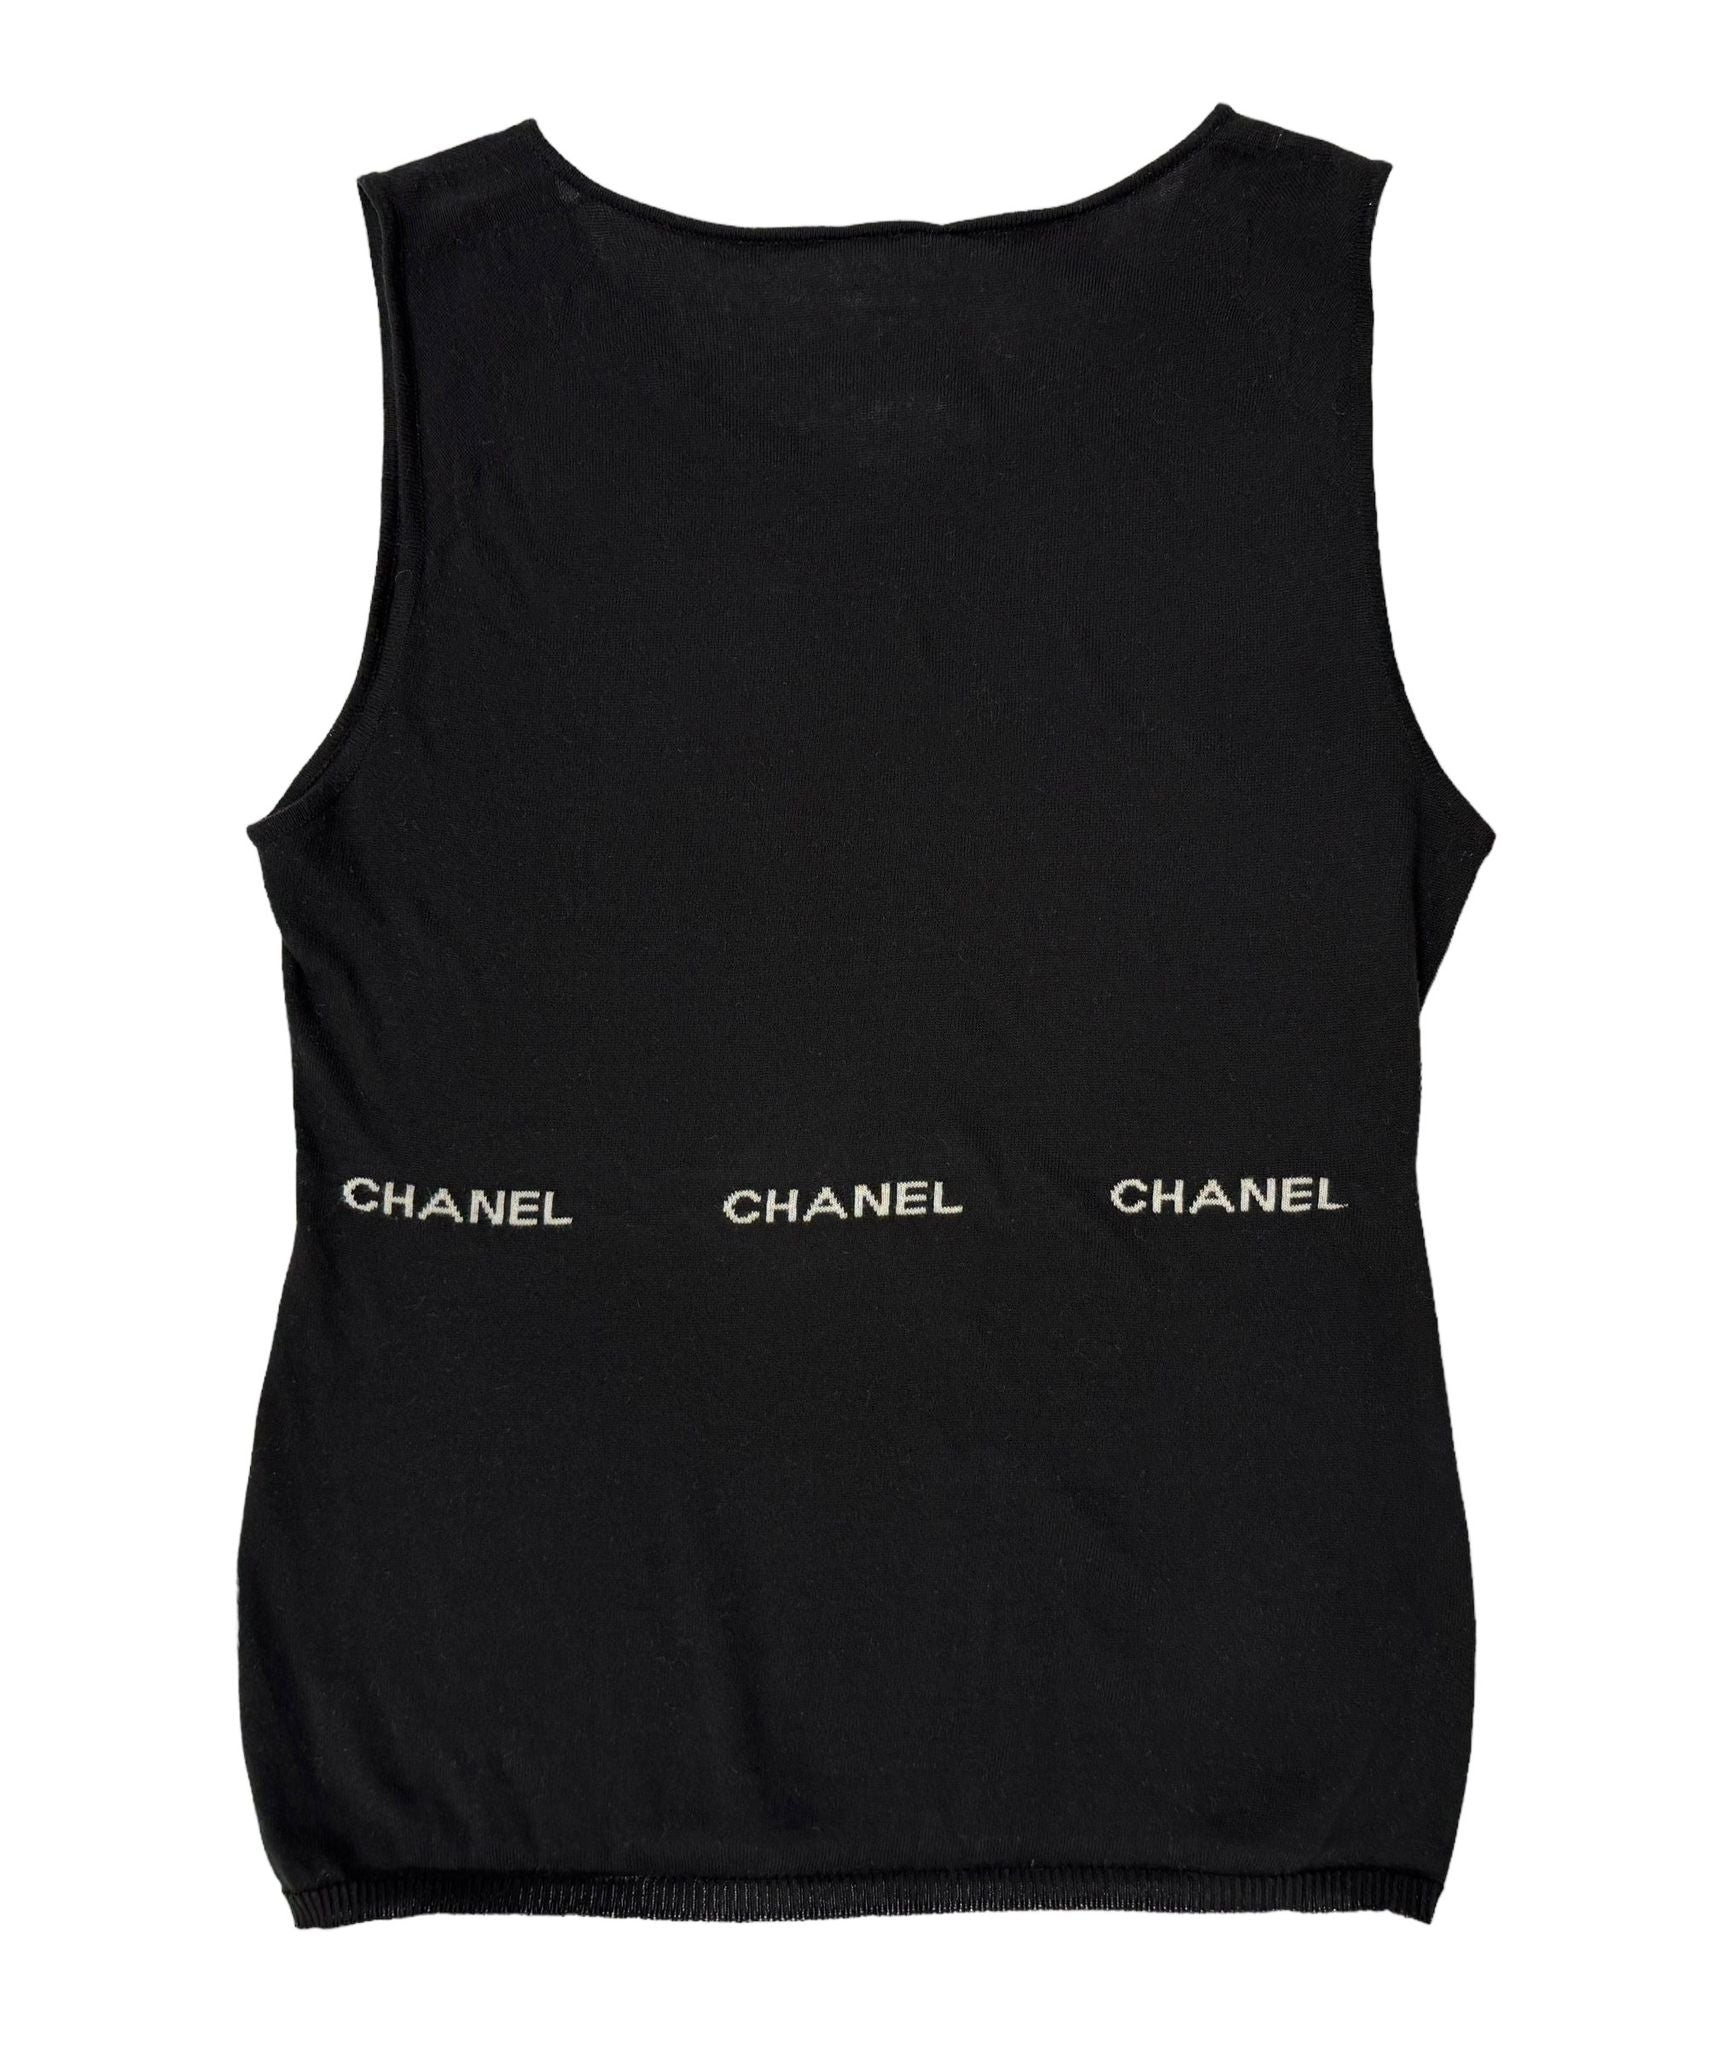 Chanel Black Logo Tank